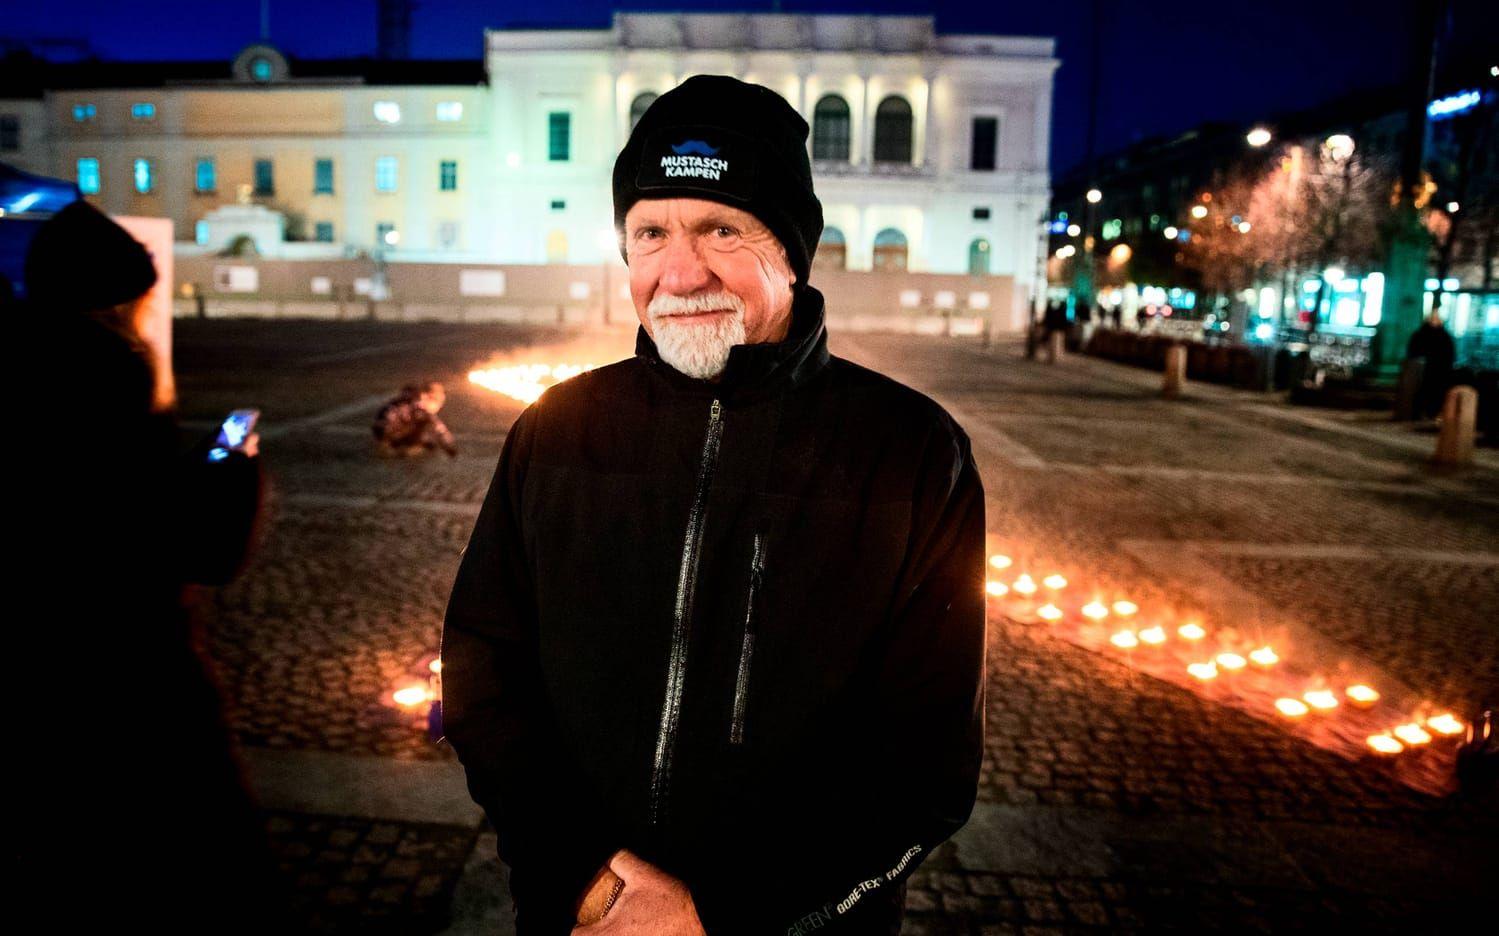 Inge Nilsson är ordförande i prostatacancerföreningen Proliv väst som under fars dag anordnade en ljusmanifestation på Gustaf Adolfs torg. Foto: Anders Ylander